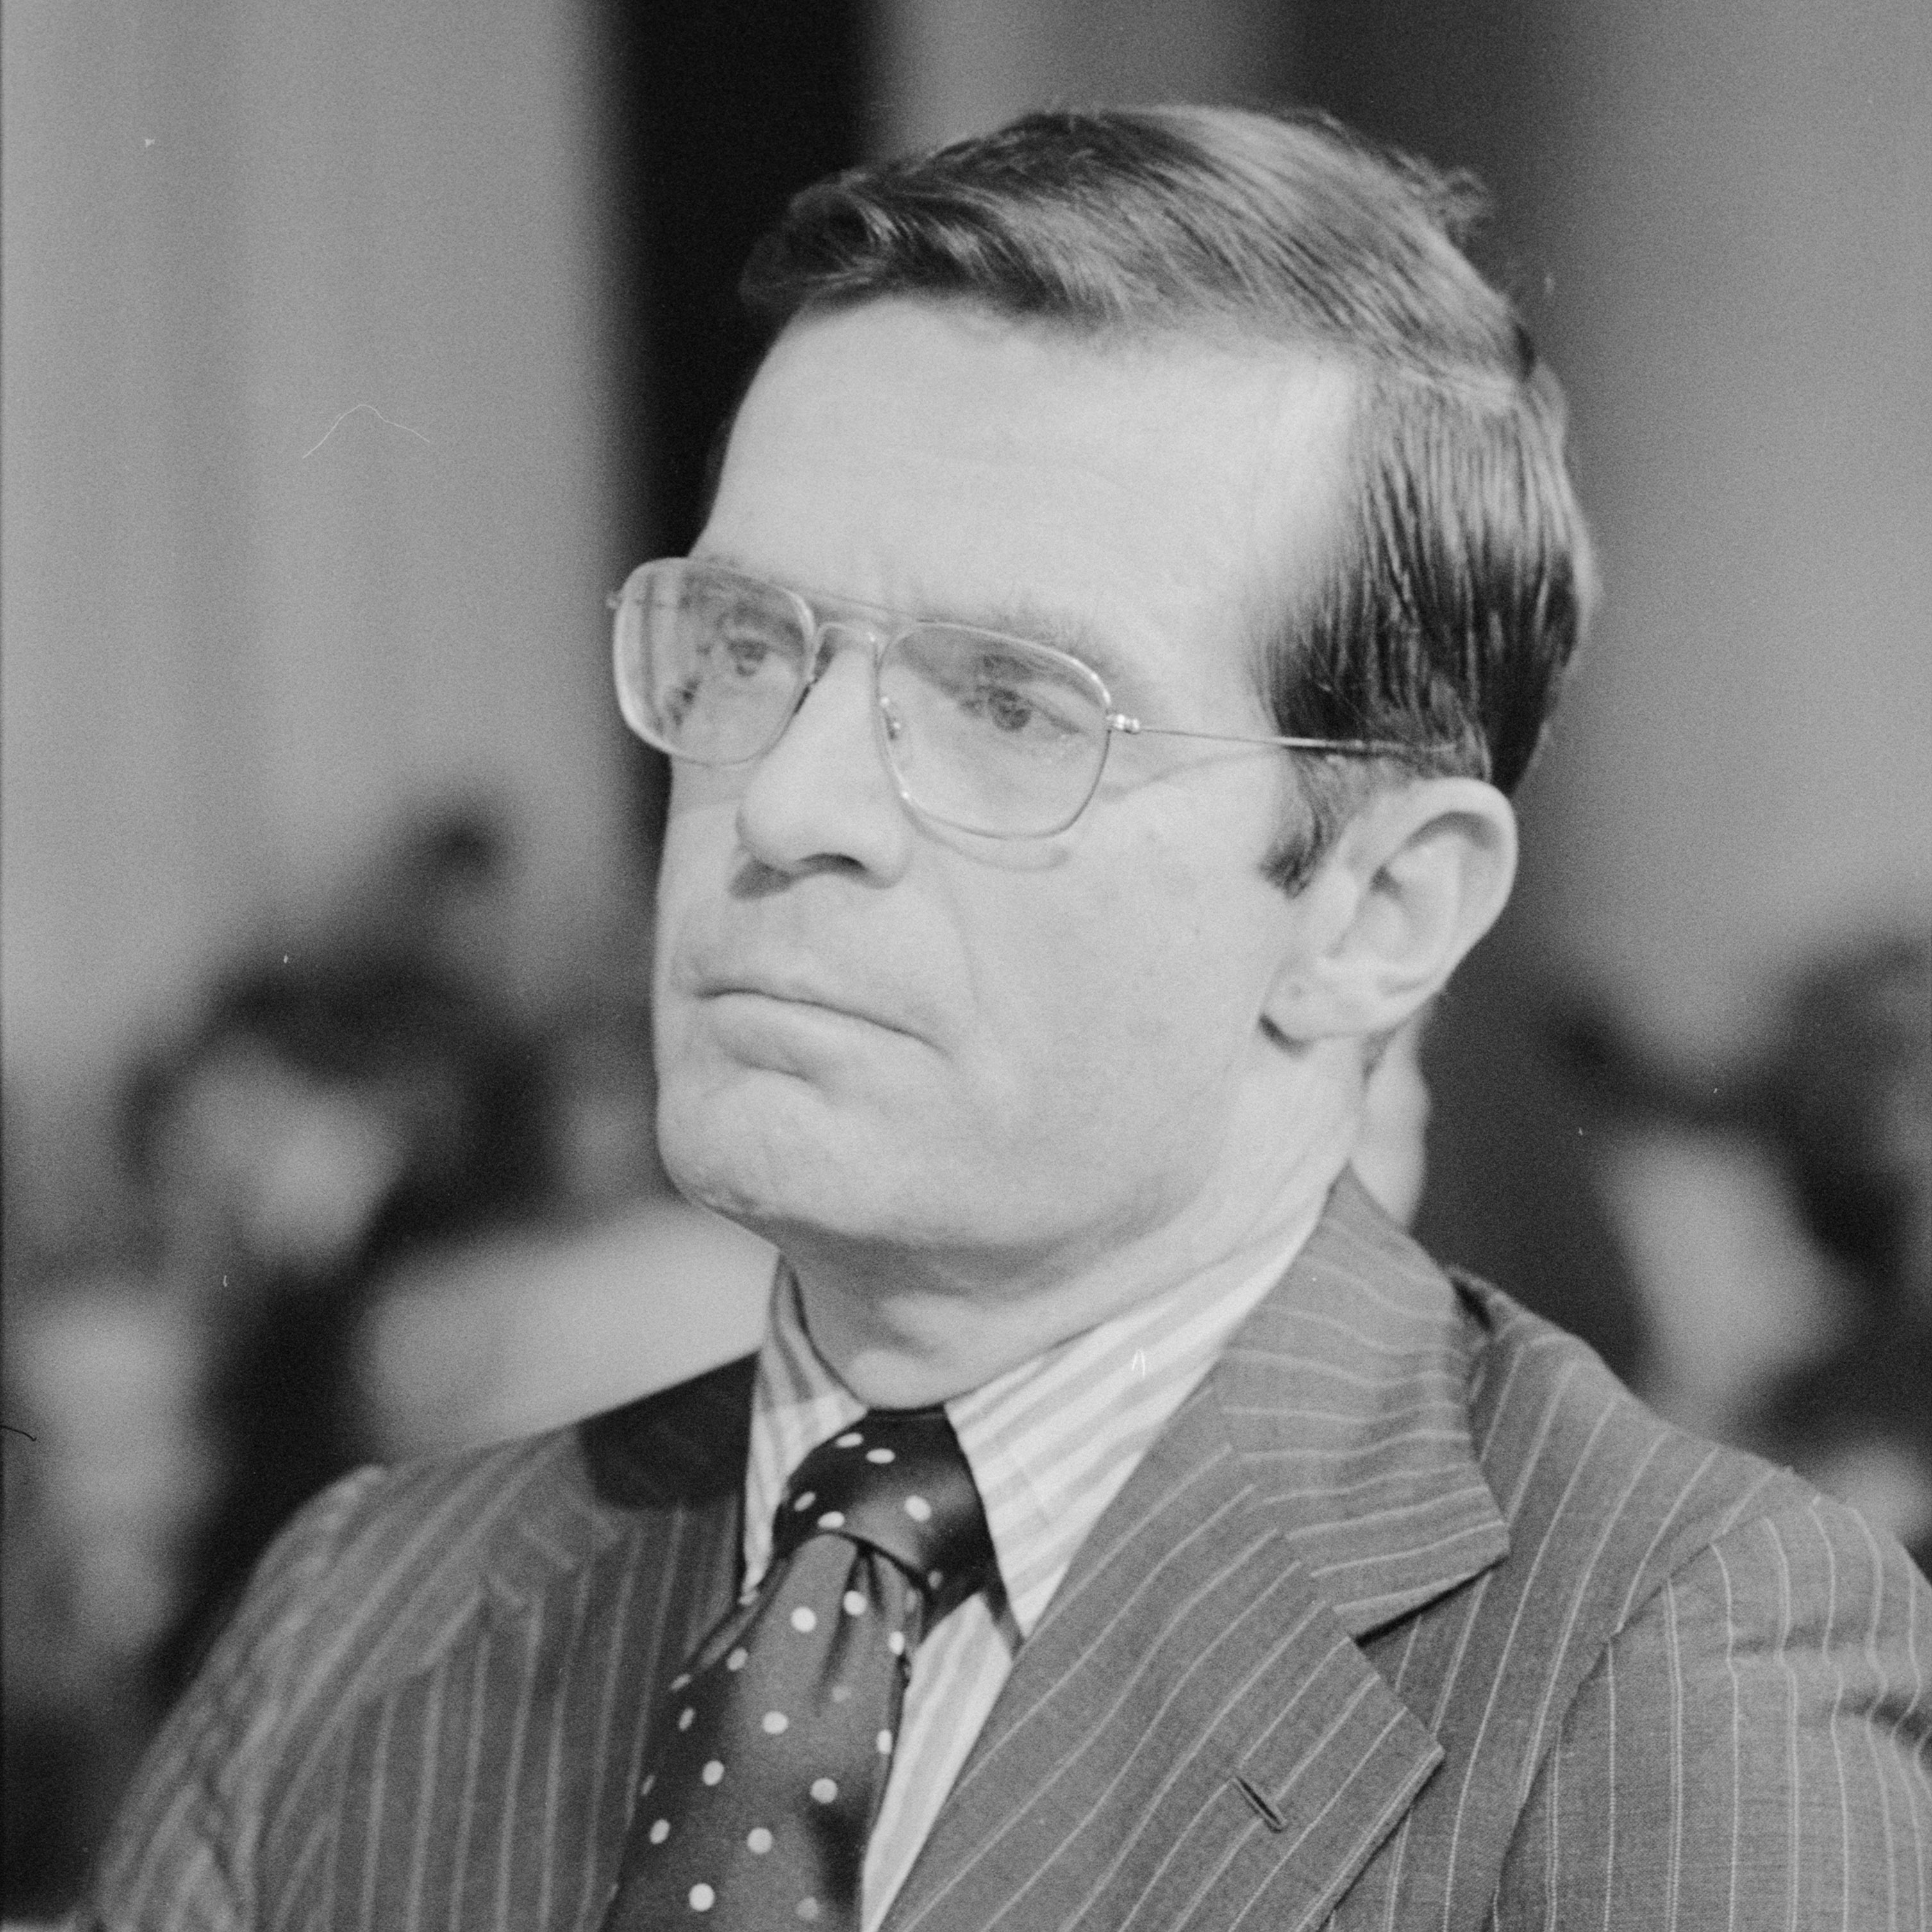 headshot of Theodore C. “Ted” Sorensen